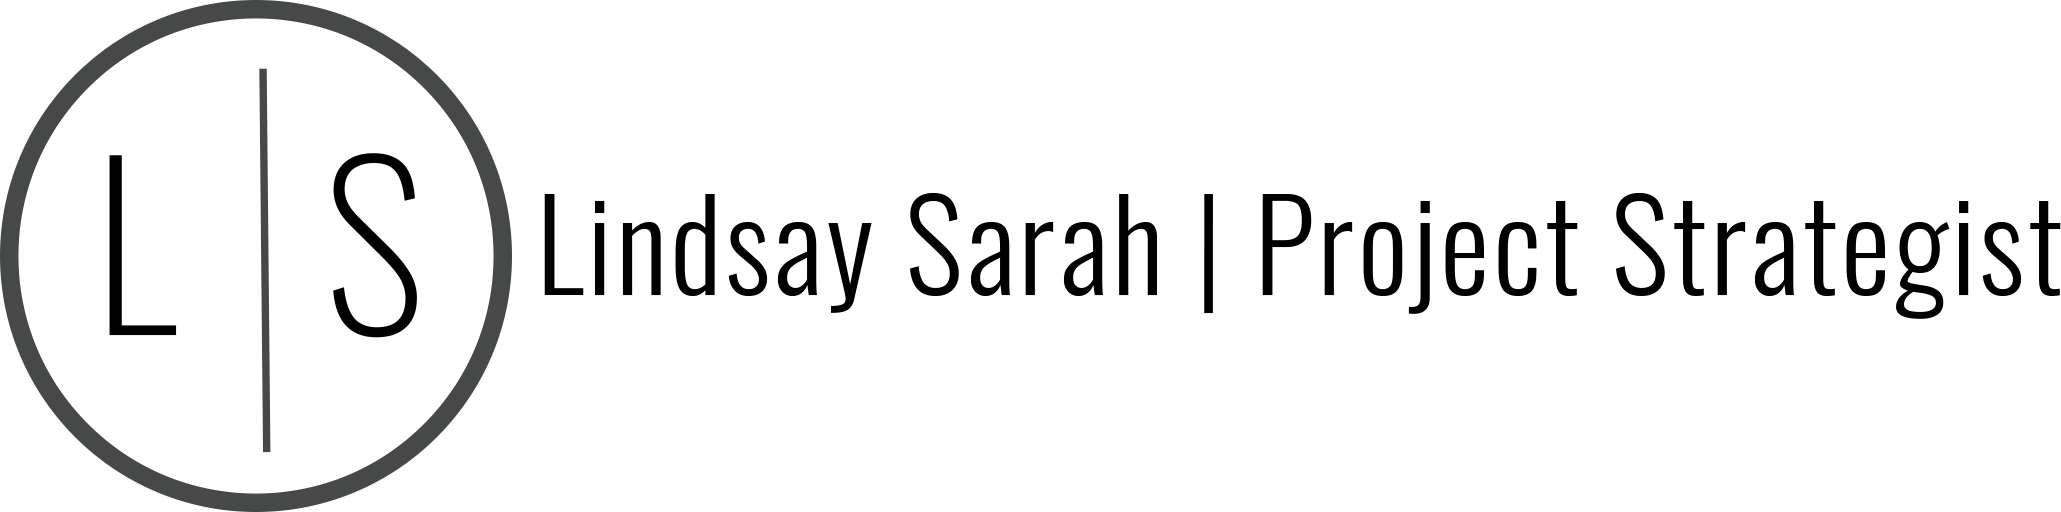 Lindsay Sarah